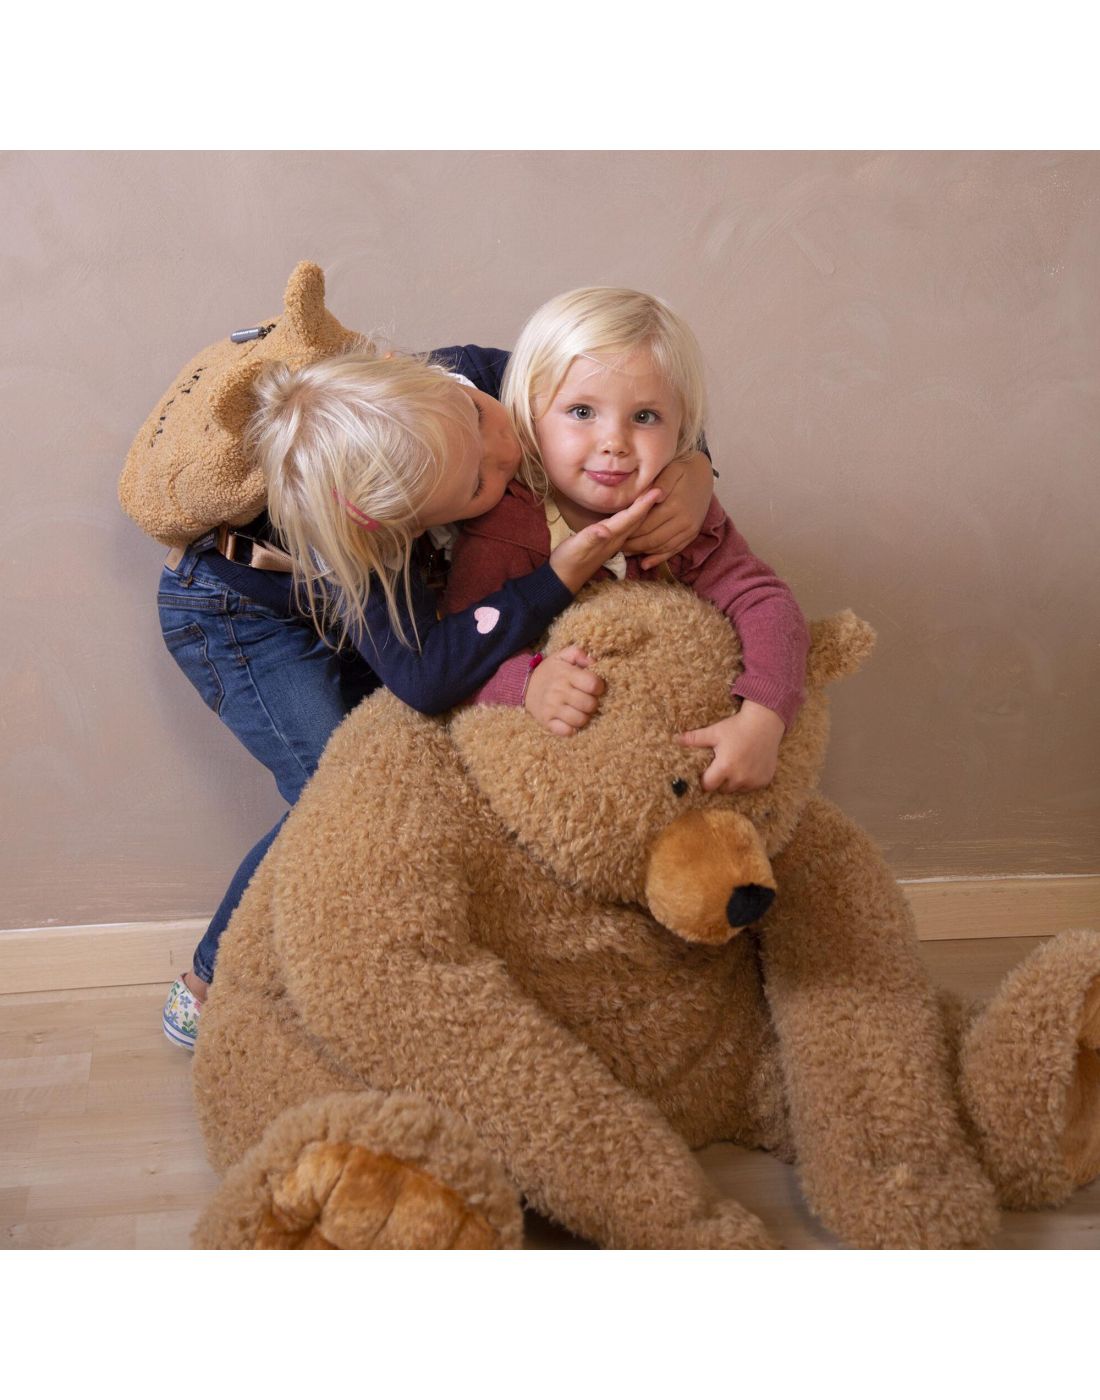 Παιδικό Λούτρινο Αρκούδι Teddy Bear 76cm Childhome, Childhome, BR75578 |  LapinKids.com | LAPIN KIDS